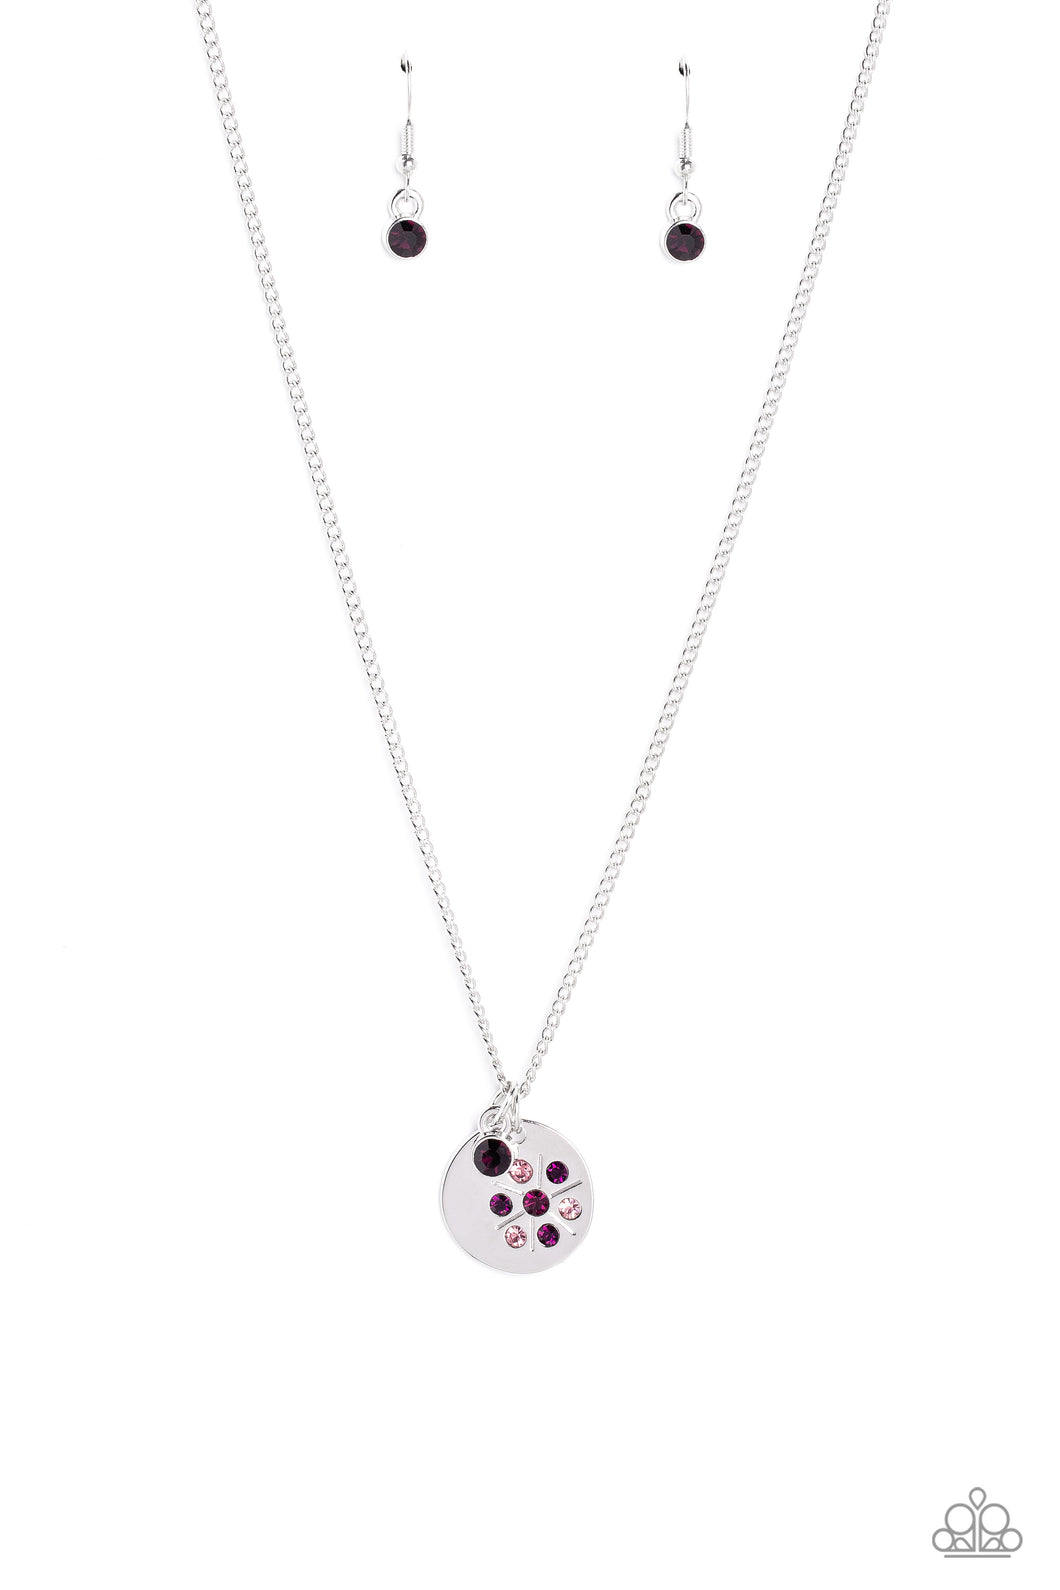 Paparazzi Dandelion Delights - Purple Necklace